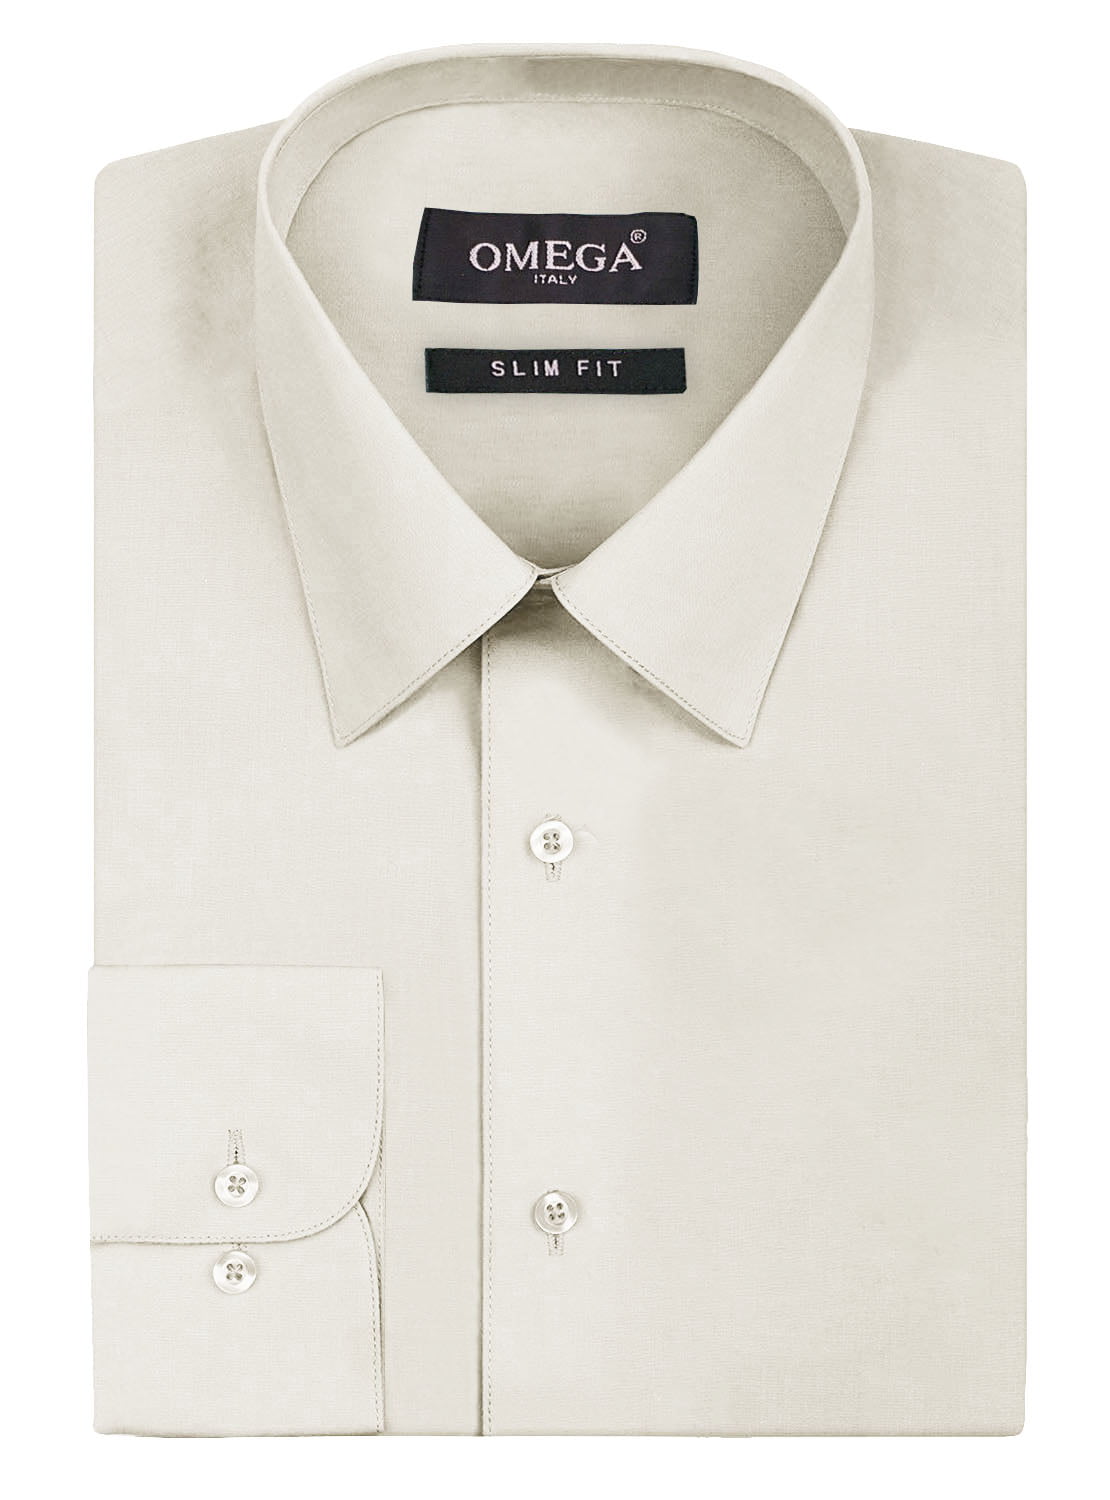 Omega Italy Men's Premium Slim Fit ...